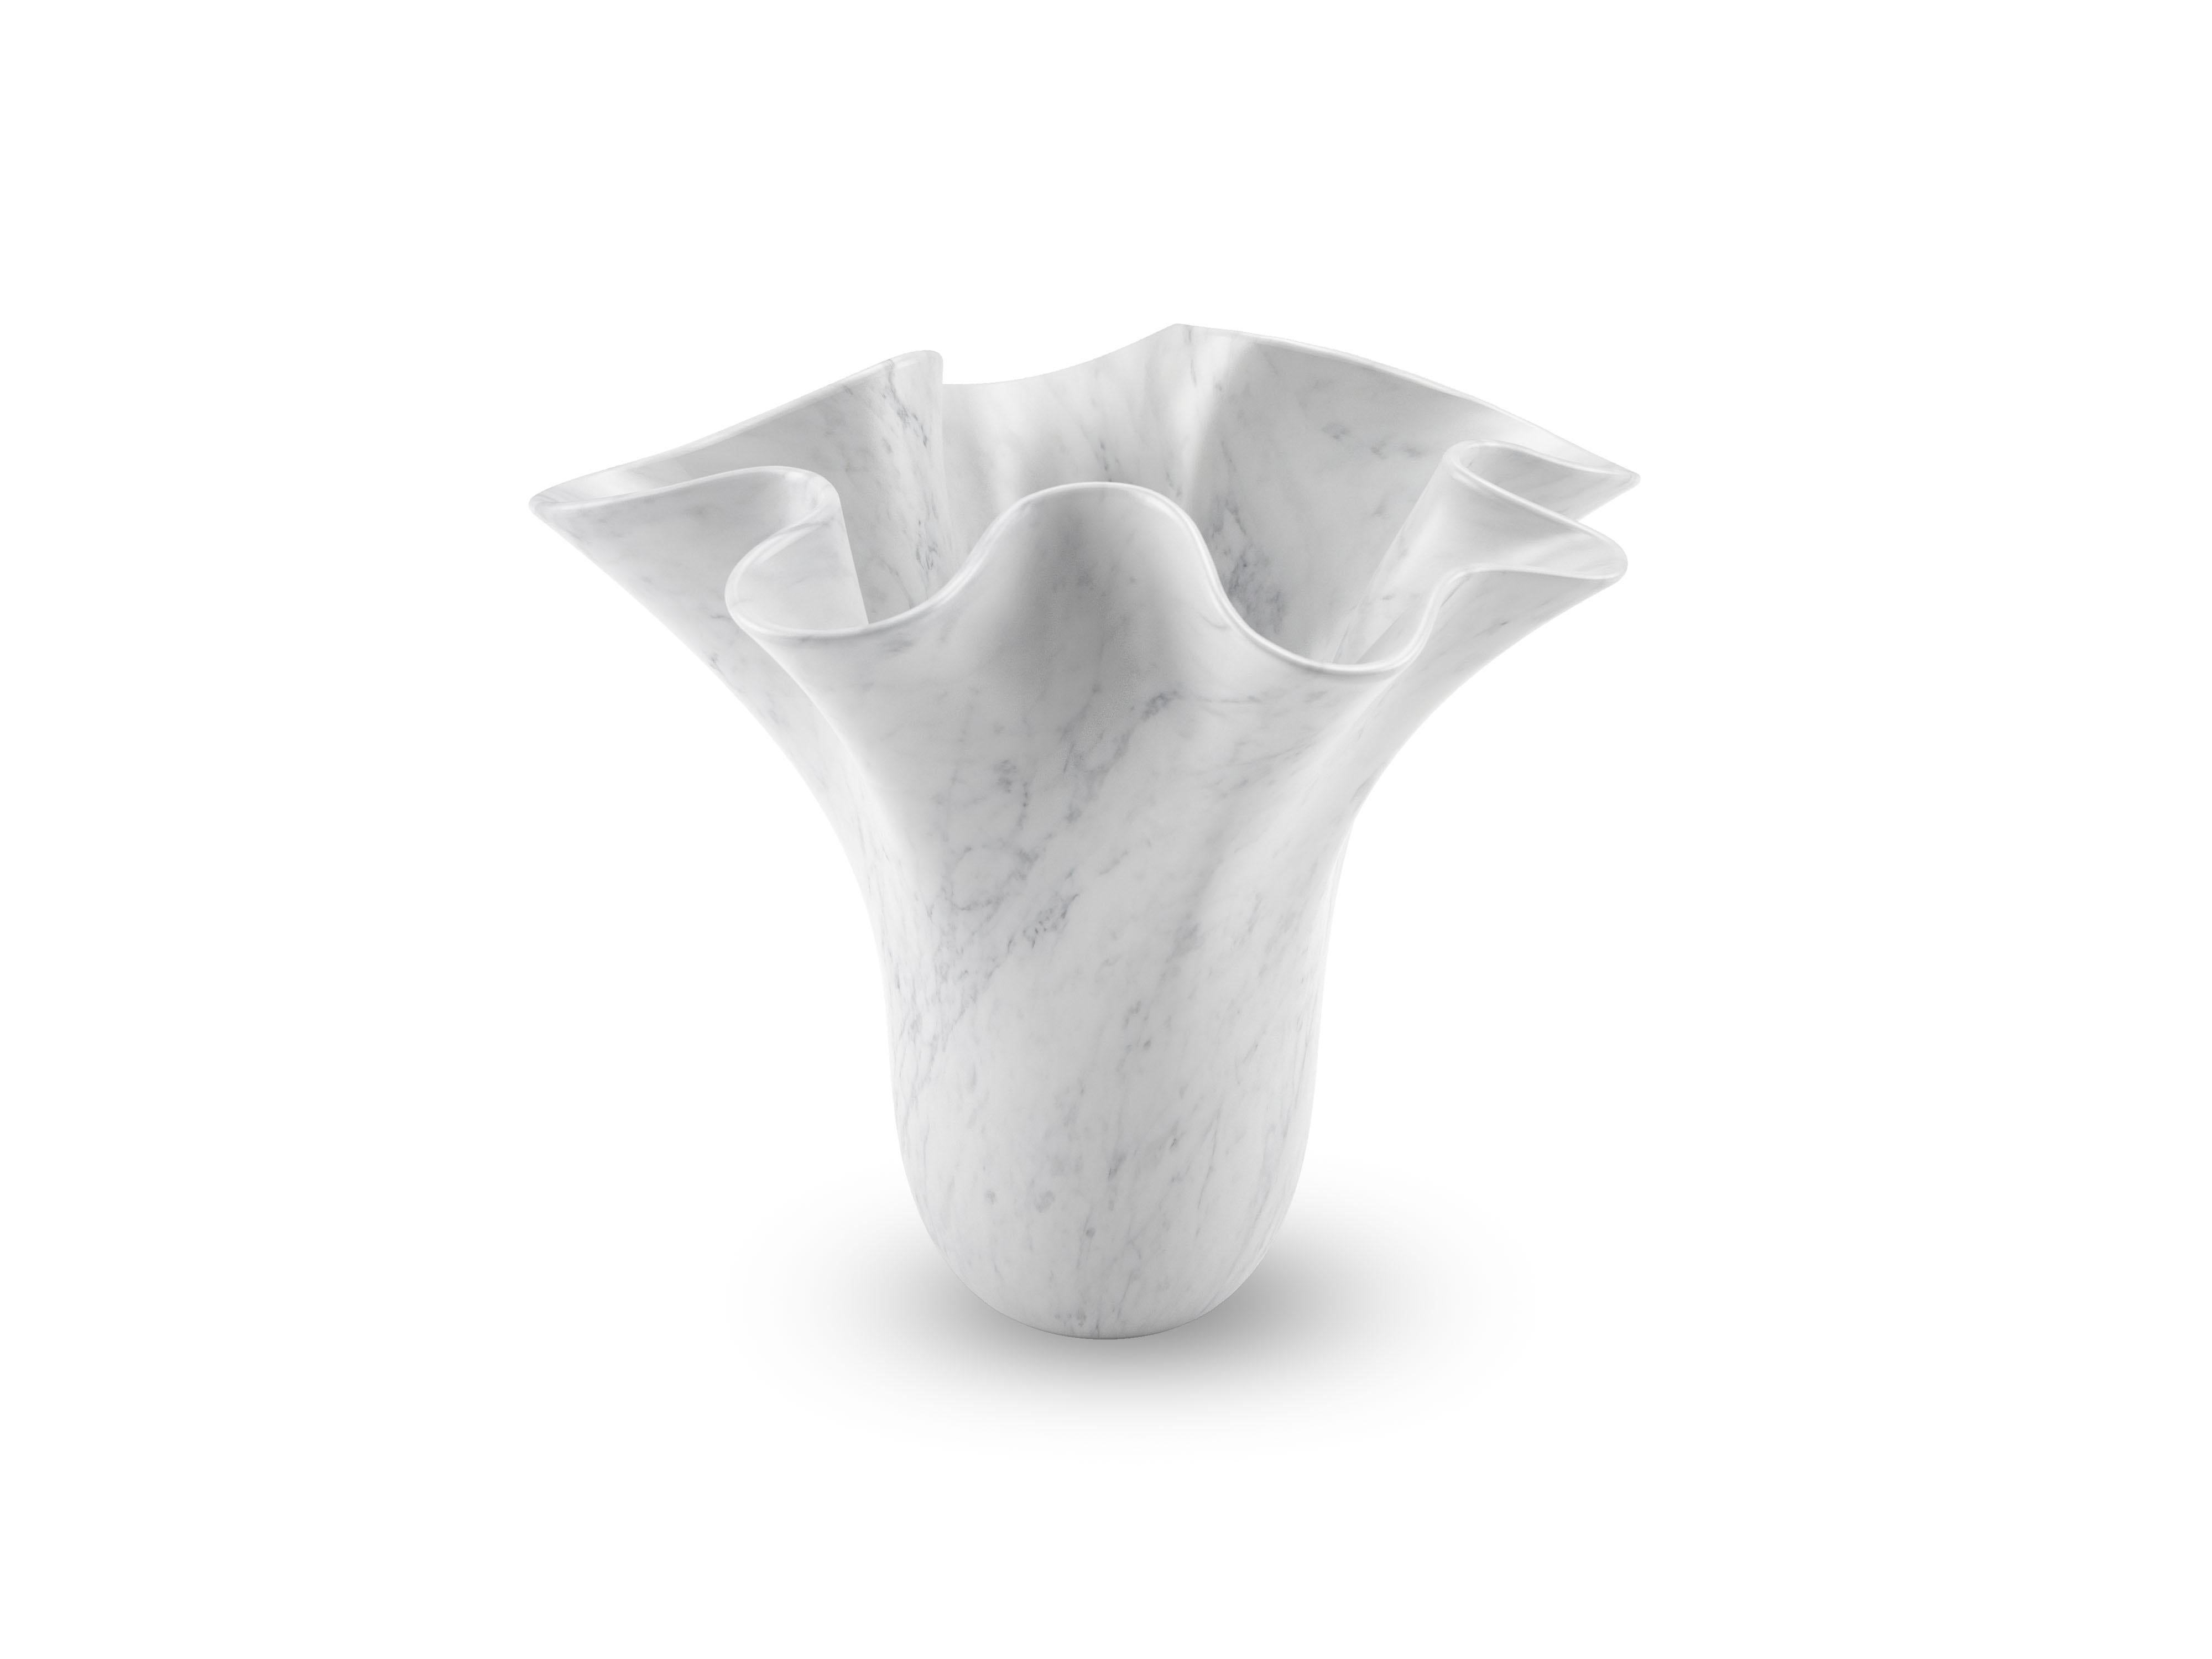 Vase sculptural taillé à la main dans un bloc massif de marbre blanc de Carrare, finition velours. Ce vase reproduit, dans une version plus petite, le vase sculptural iconique PV05 conçu par l'Atelier Barberini & Gunnell, fabriqué à la main en